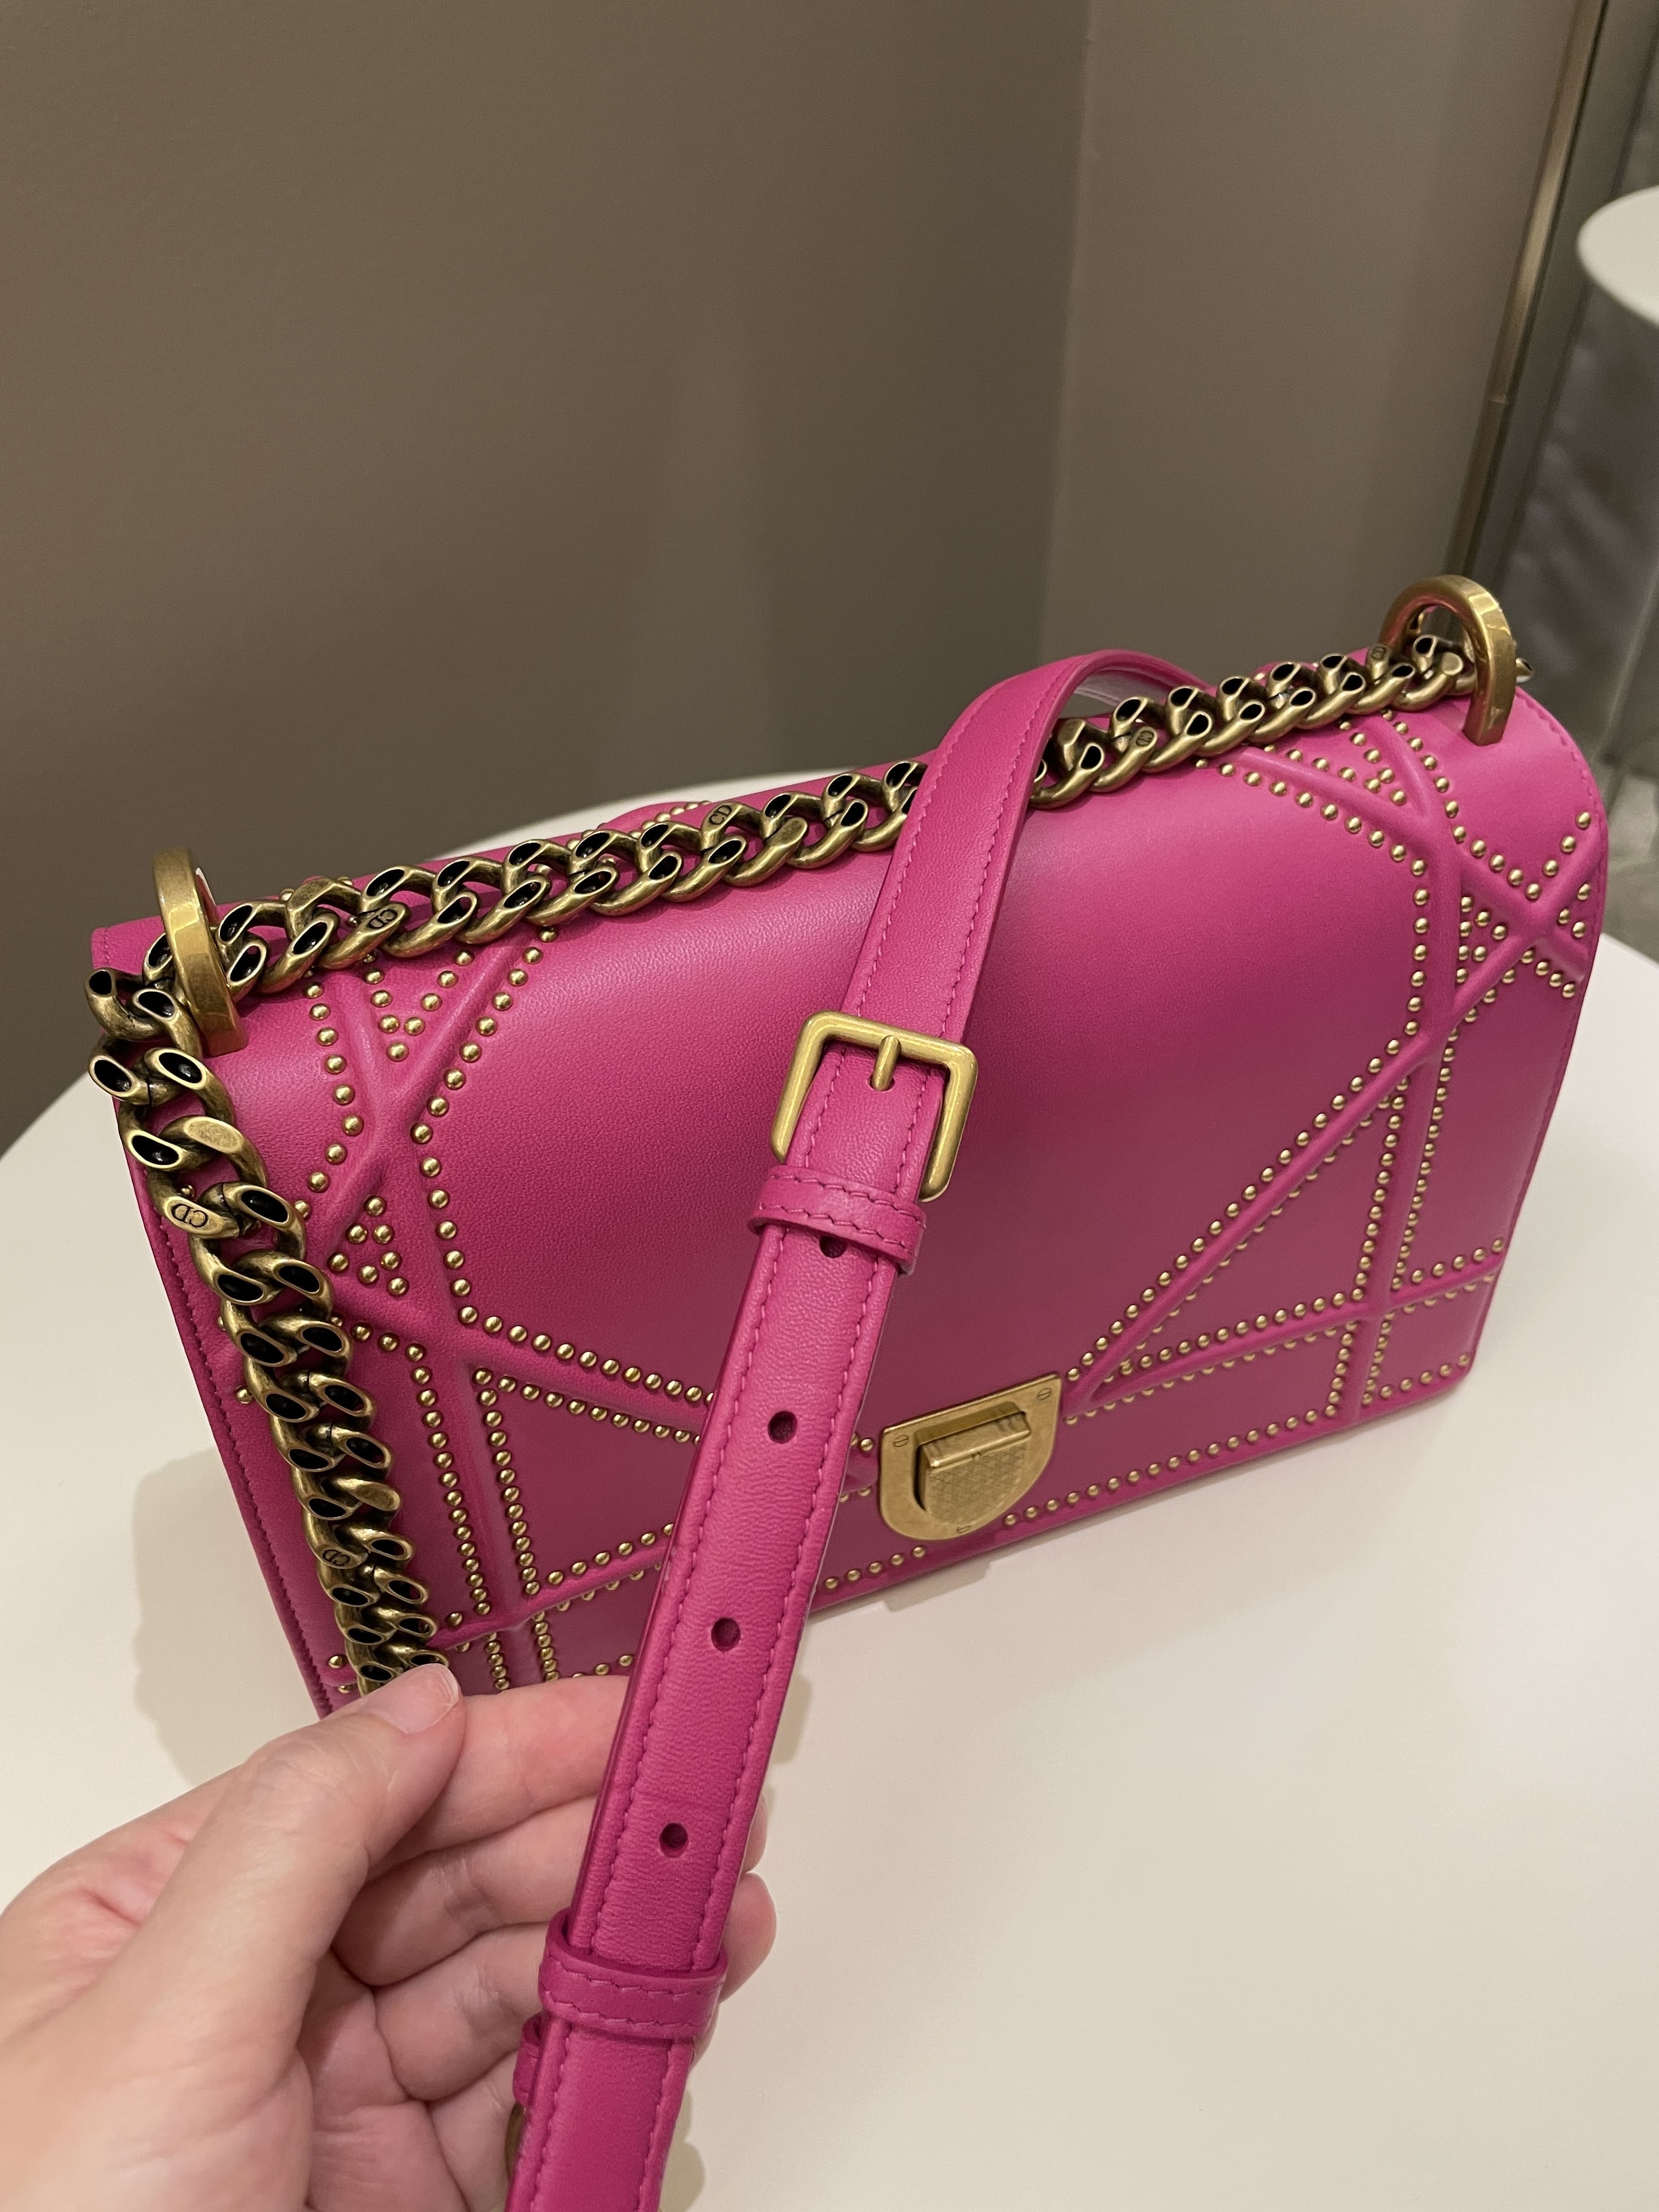 Dior Authenticated Diorama Handbag